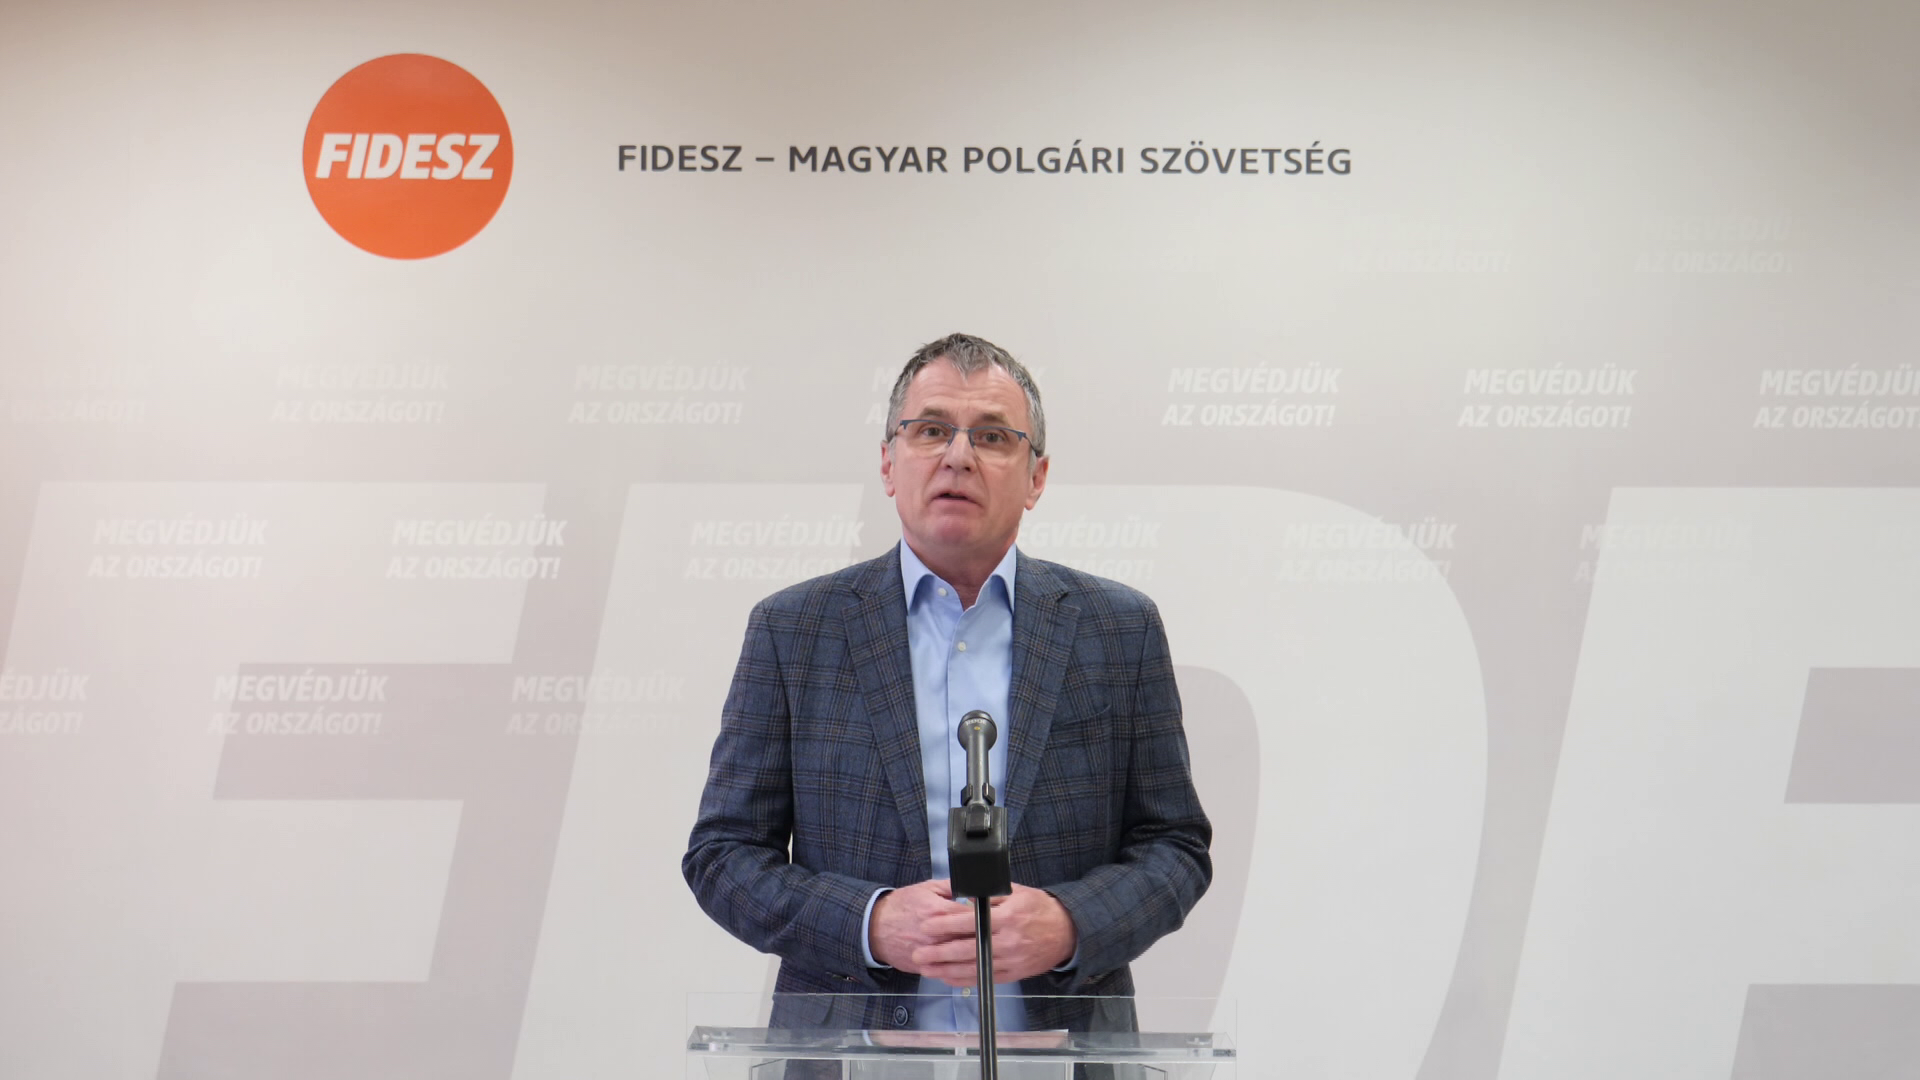 Fidesz: A baloldal megszorításokat és nyugdíjcsökkentést hozna